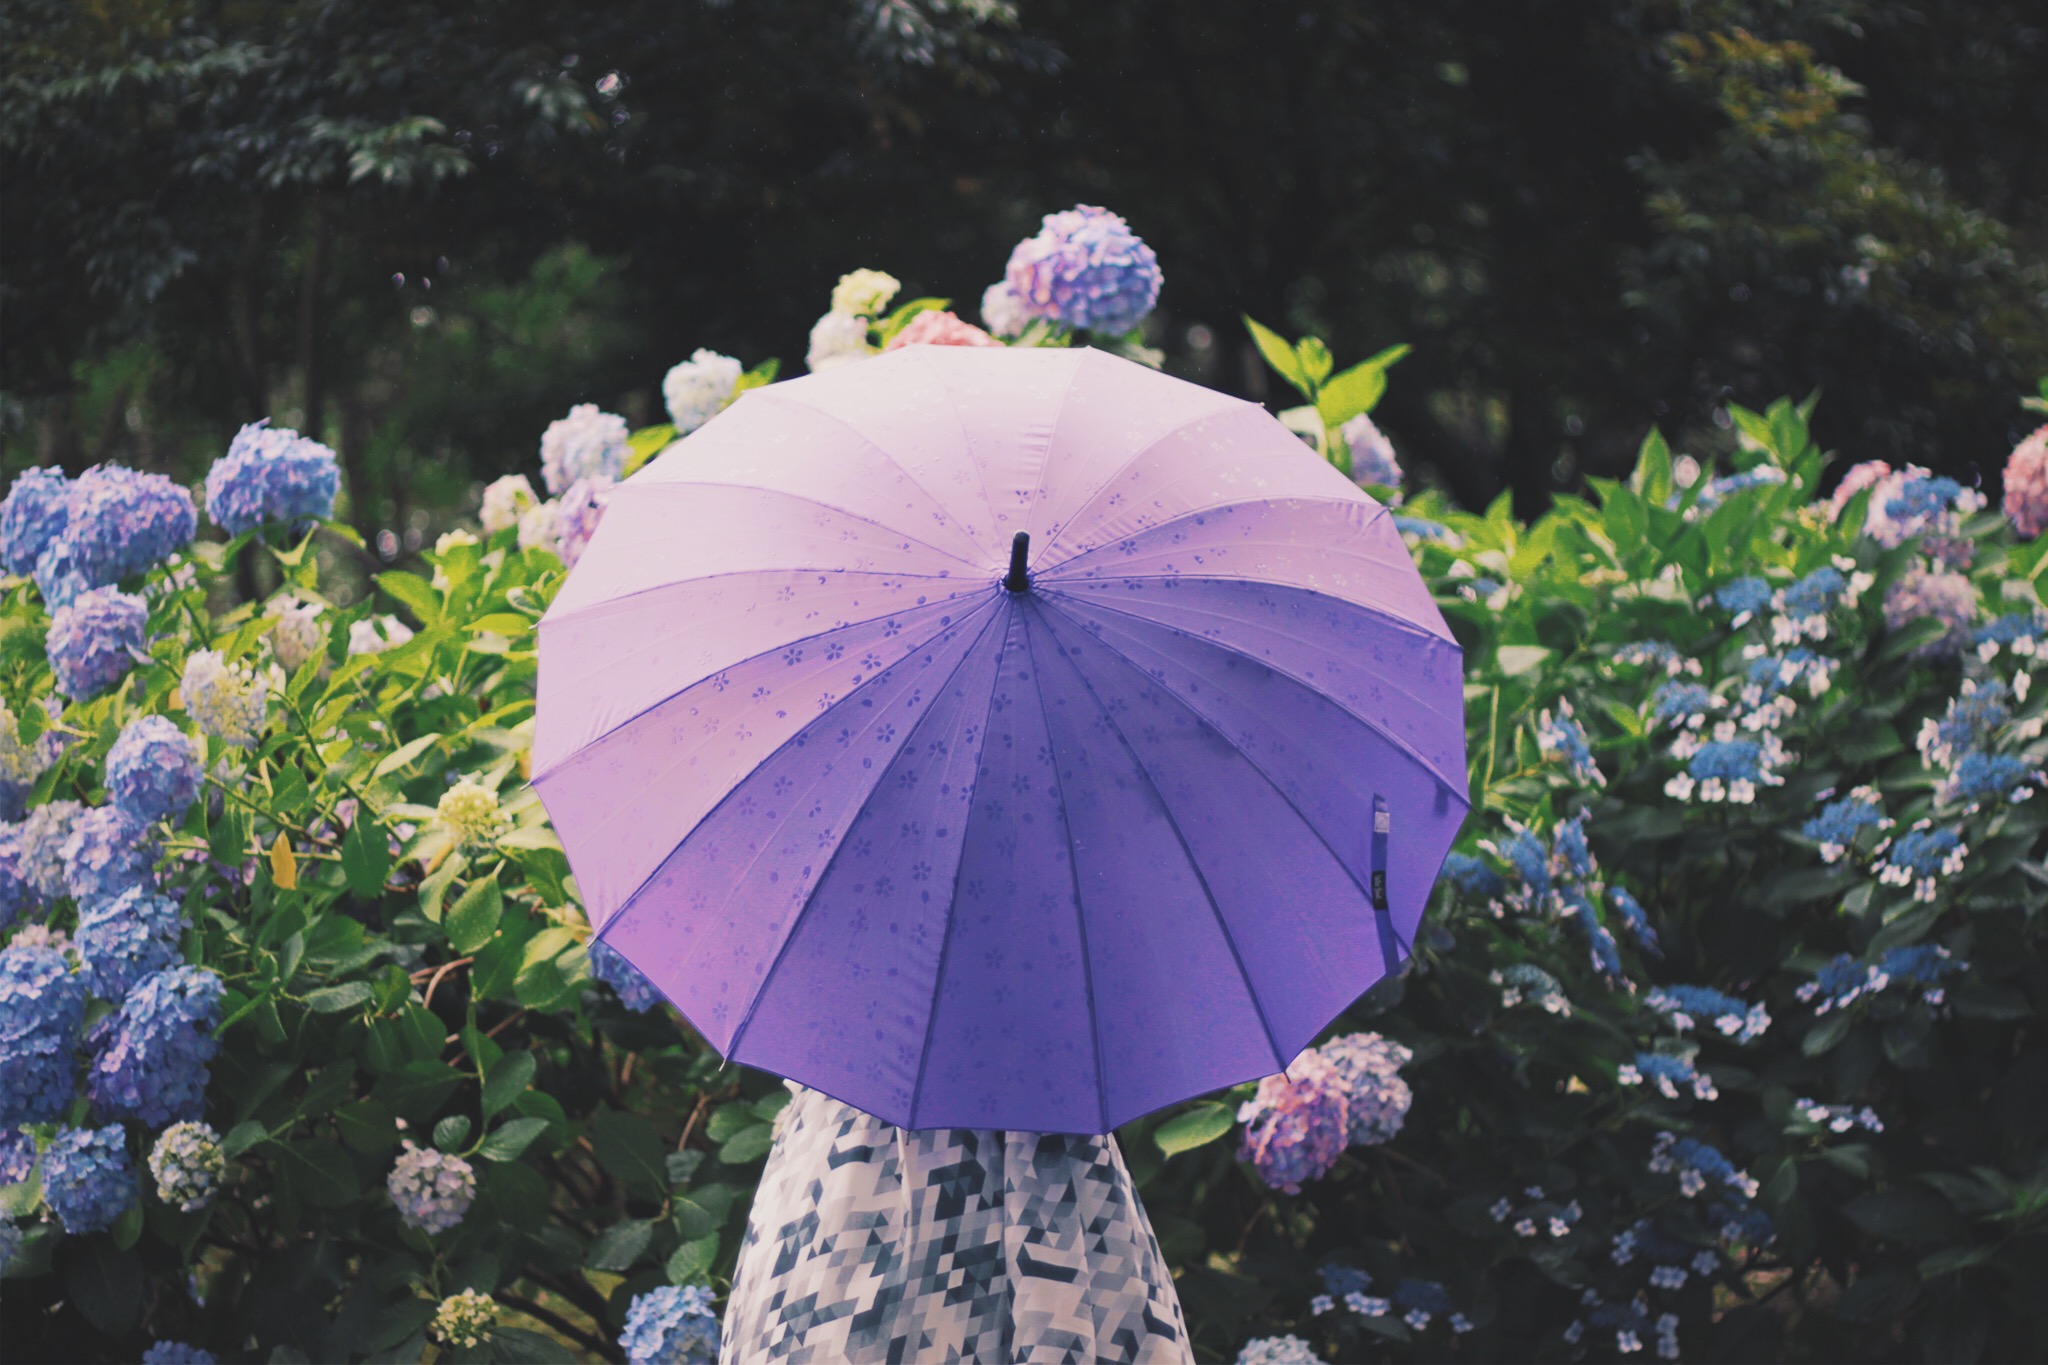 Зонтик раскрылся. Цветы в зонтике. Фиолетовый зонтик. Растение зонтик. Фиолетовый цветок зонтиком.